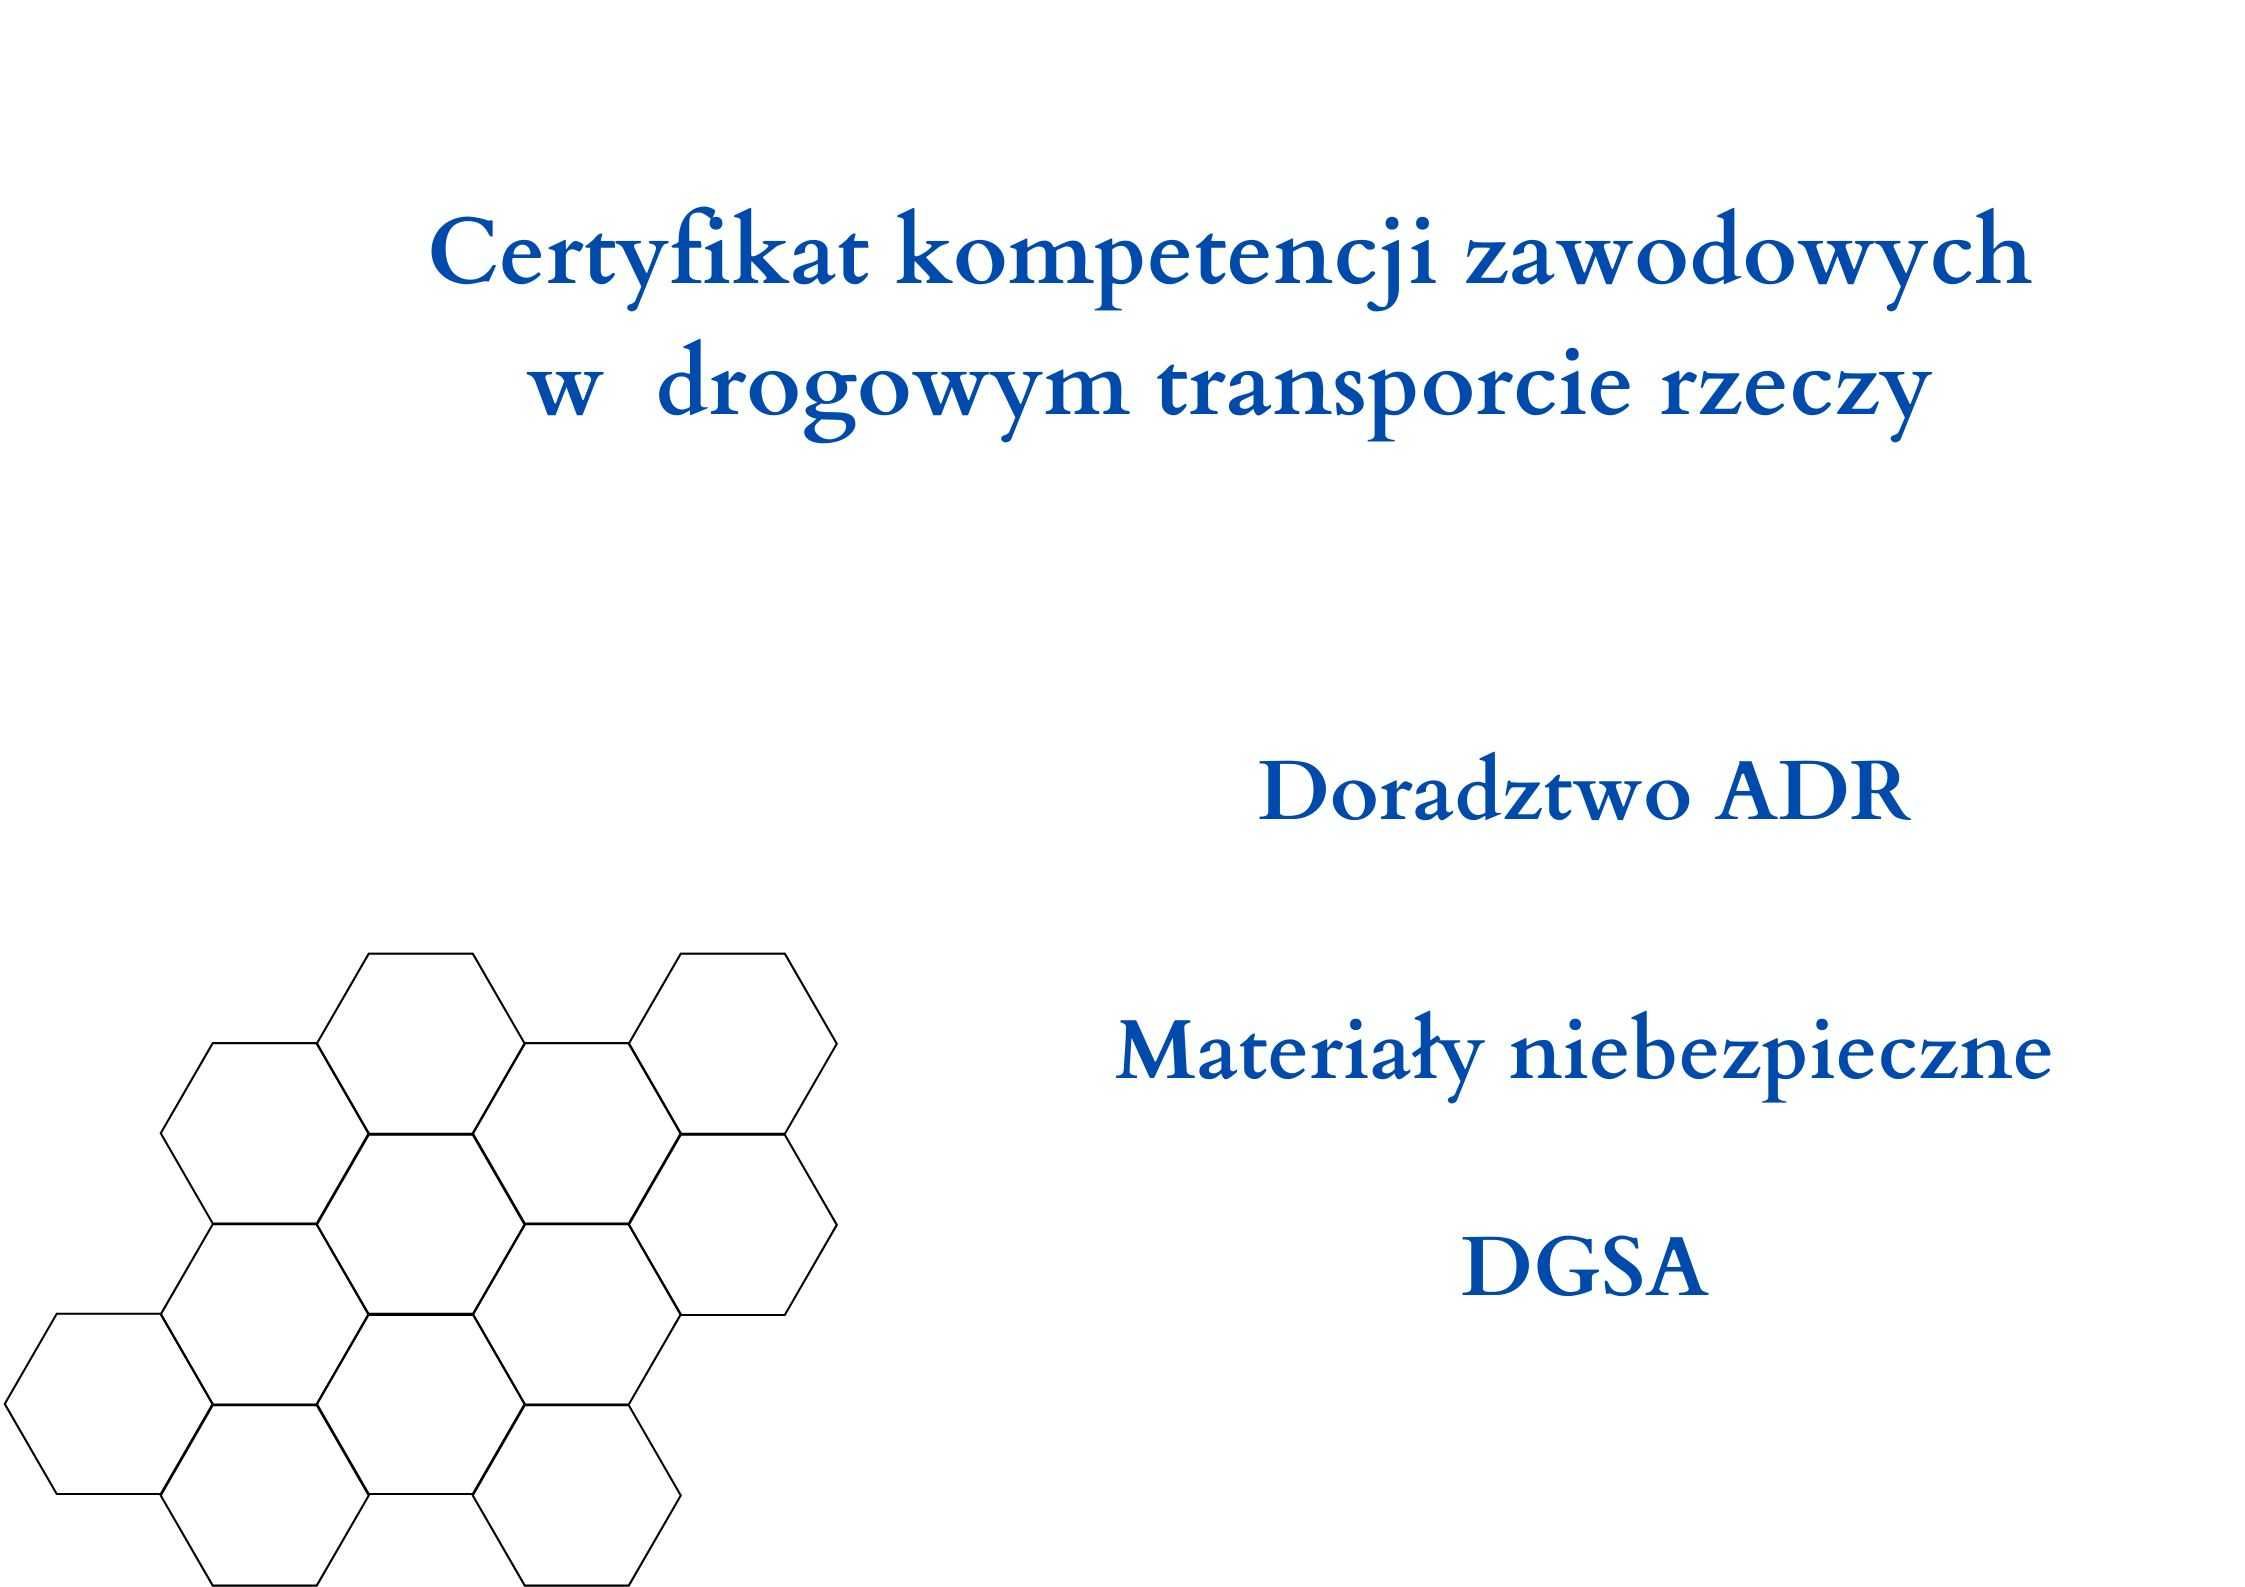 Użyczę certyfikat kompetencji zawodowych rzeczy i DORADCA ADR cała PL